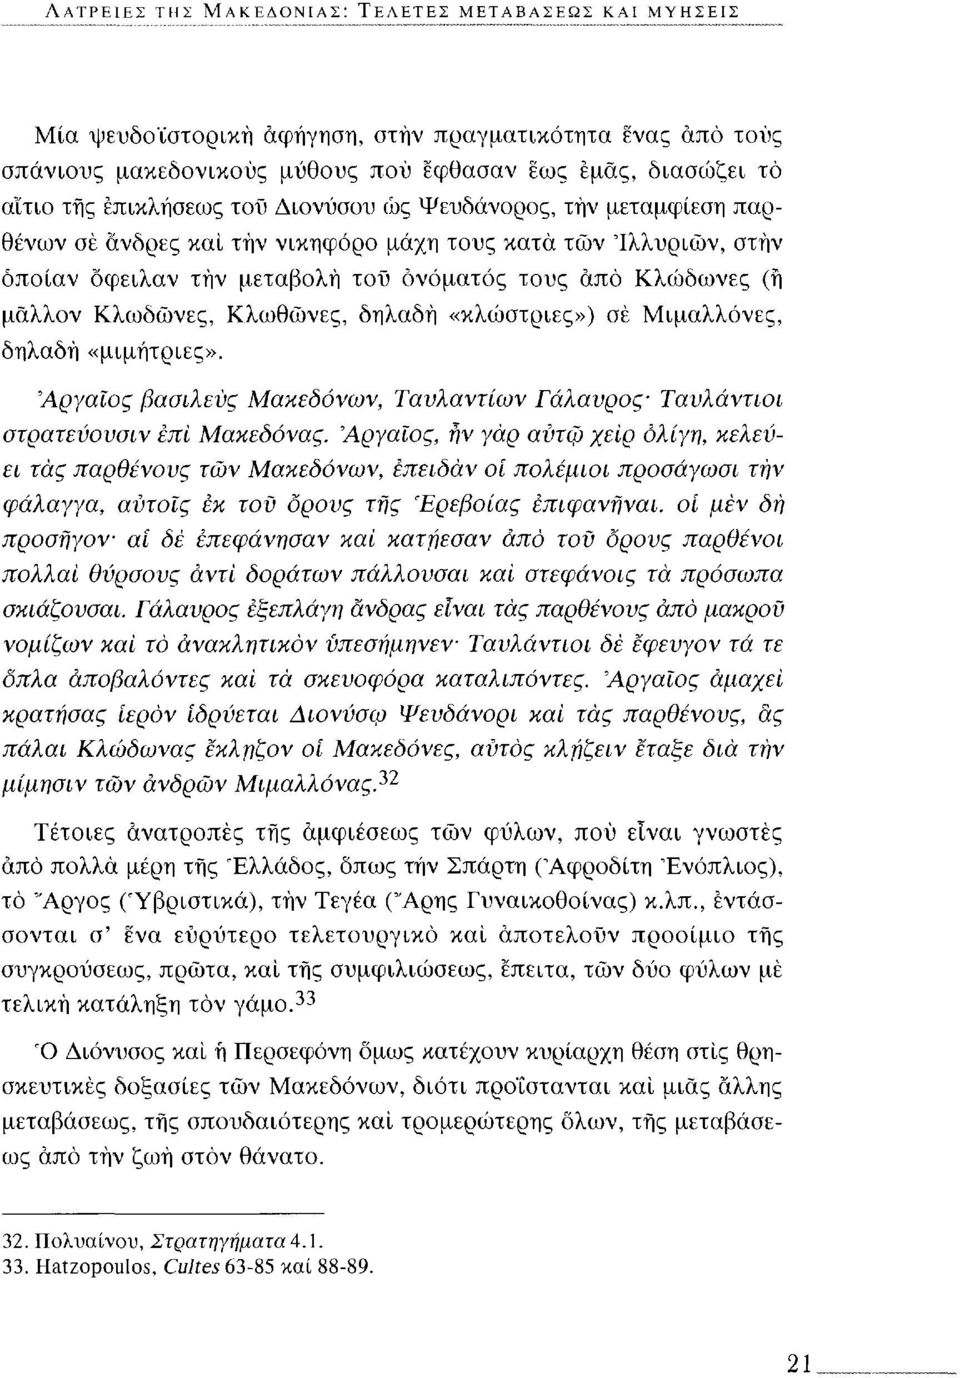 Κλωδώνες, Κλωθώνες, δηλαδή «κλώστριες») σε Μιμαλλόνες, δηλαδή «μιμήτριες». Αργαίος βασιλεύς Μακεδόνων, Ταυλαντίων Γάλαυρος Ταυλάντιοι στρατεύουσιν επί Μακεδόνας.